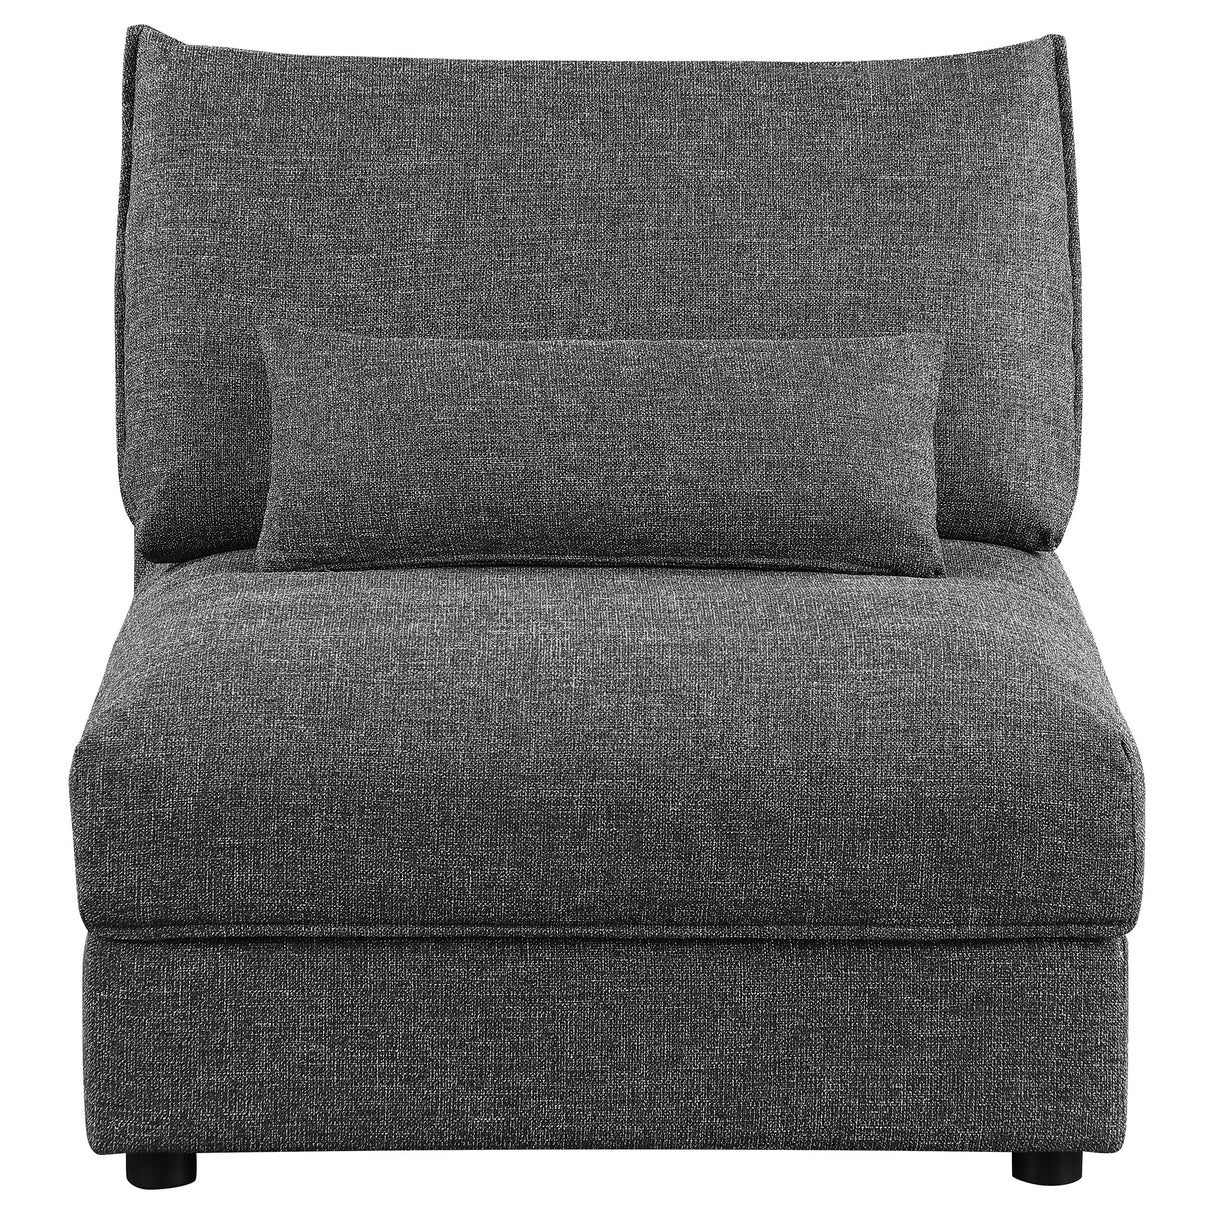 Armless Chair - Sasha Upholstered Armless Chair Barely Black